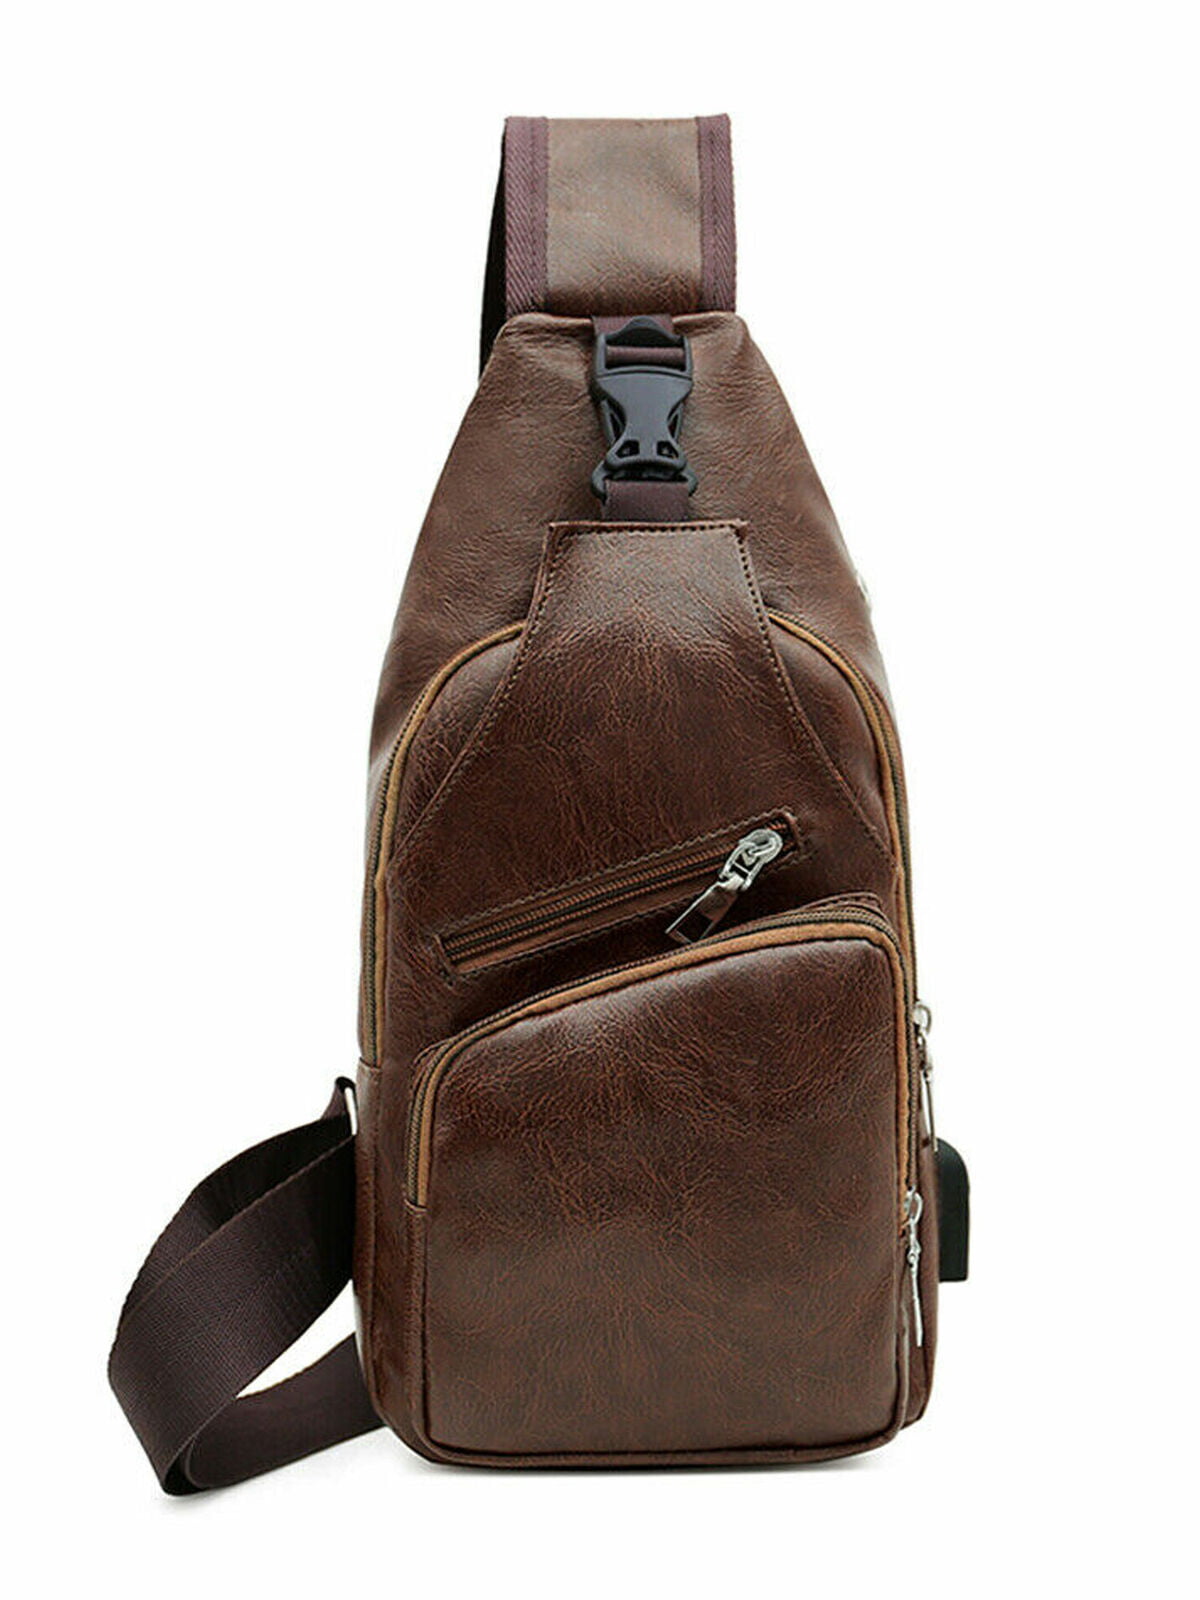 Details about   Men's PU Leather Chest Bag Shoulder Pack USB Charging Sport Crossbody Handbag US